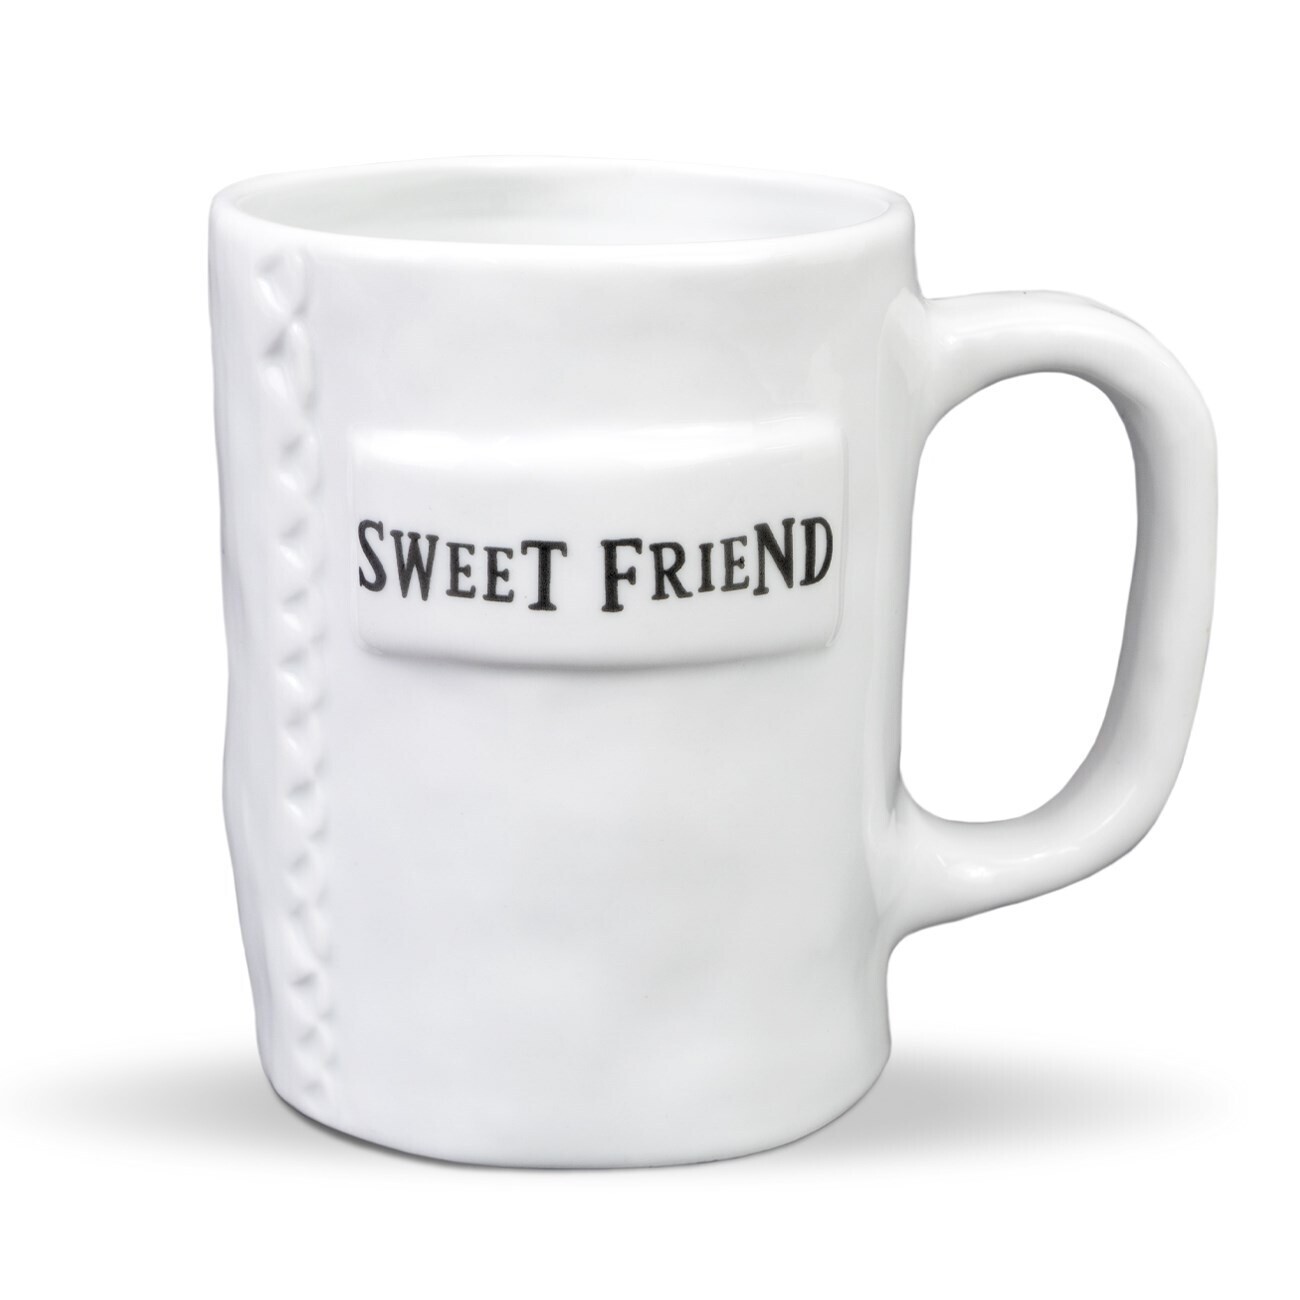 Brownlow 83548 Sweet Friend Mug Artisan Home 